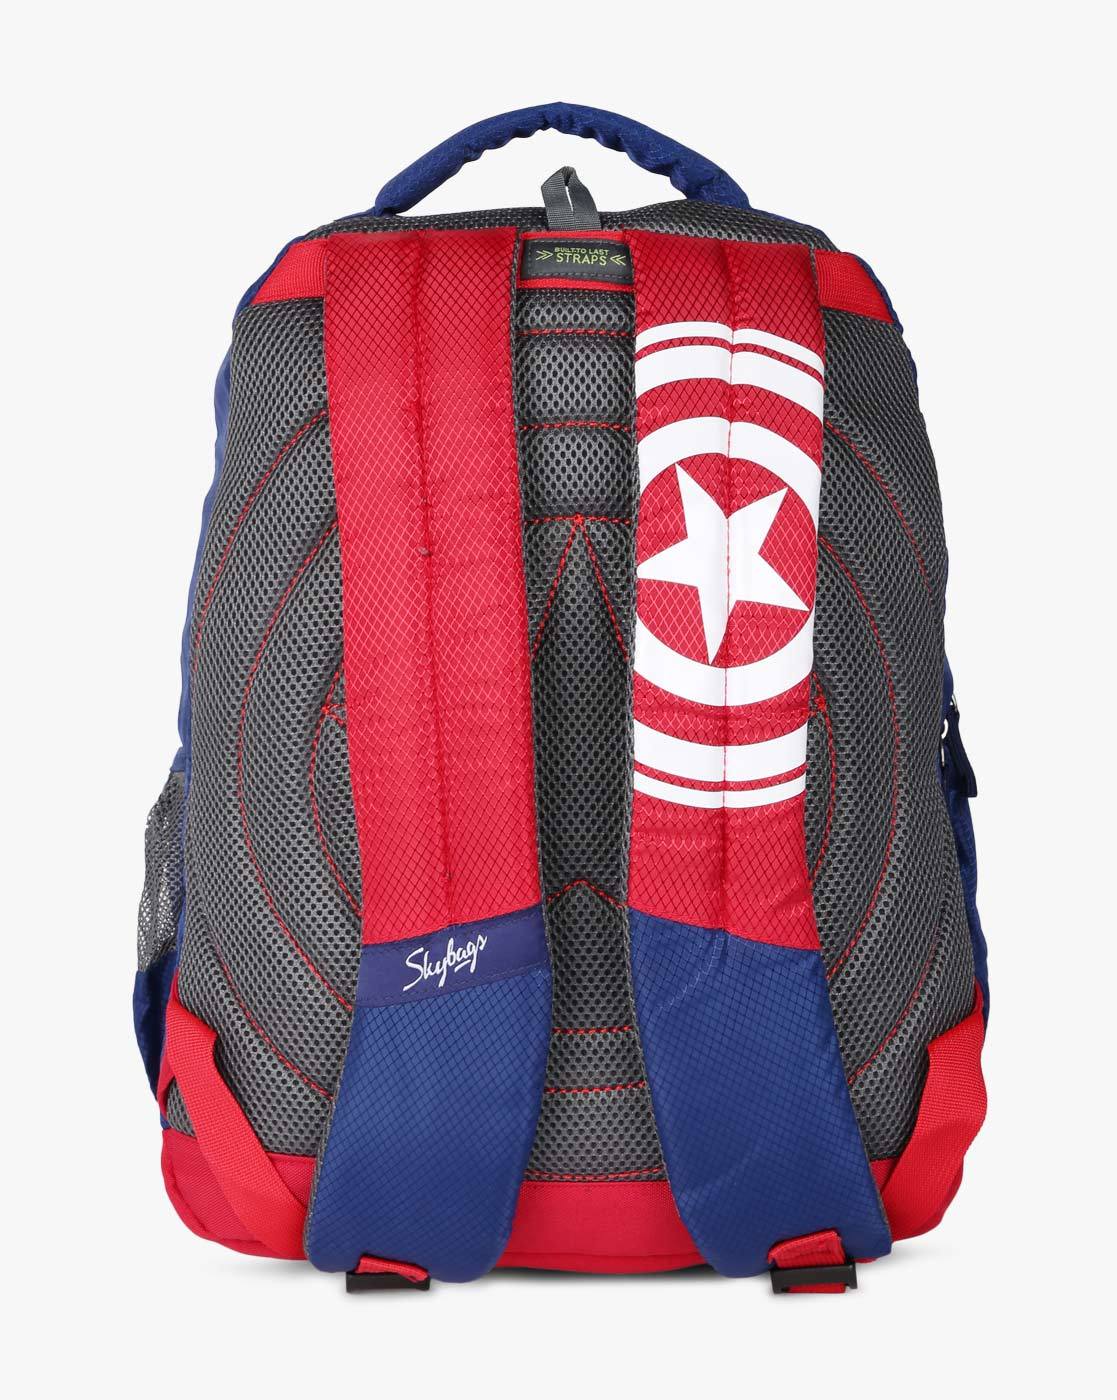 The Avengers Captain America Marvel Rucksack School Shoulder Bag Travel  Backpack | eBay